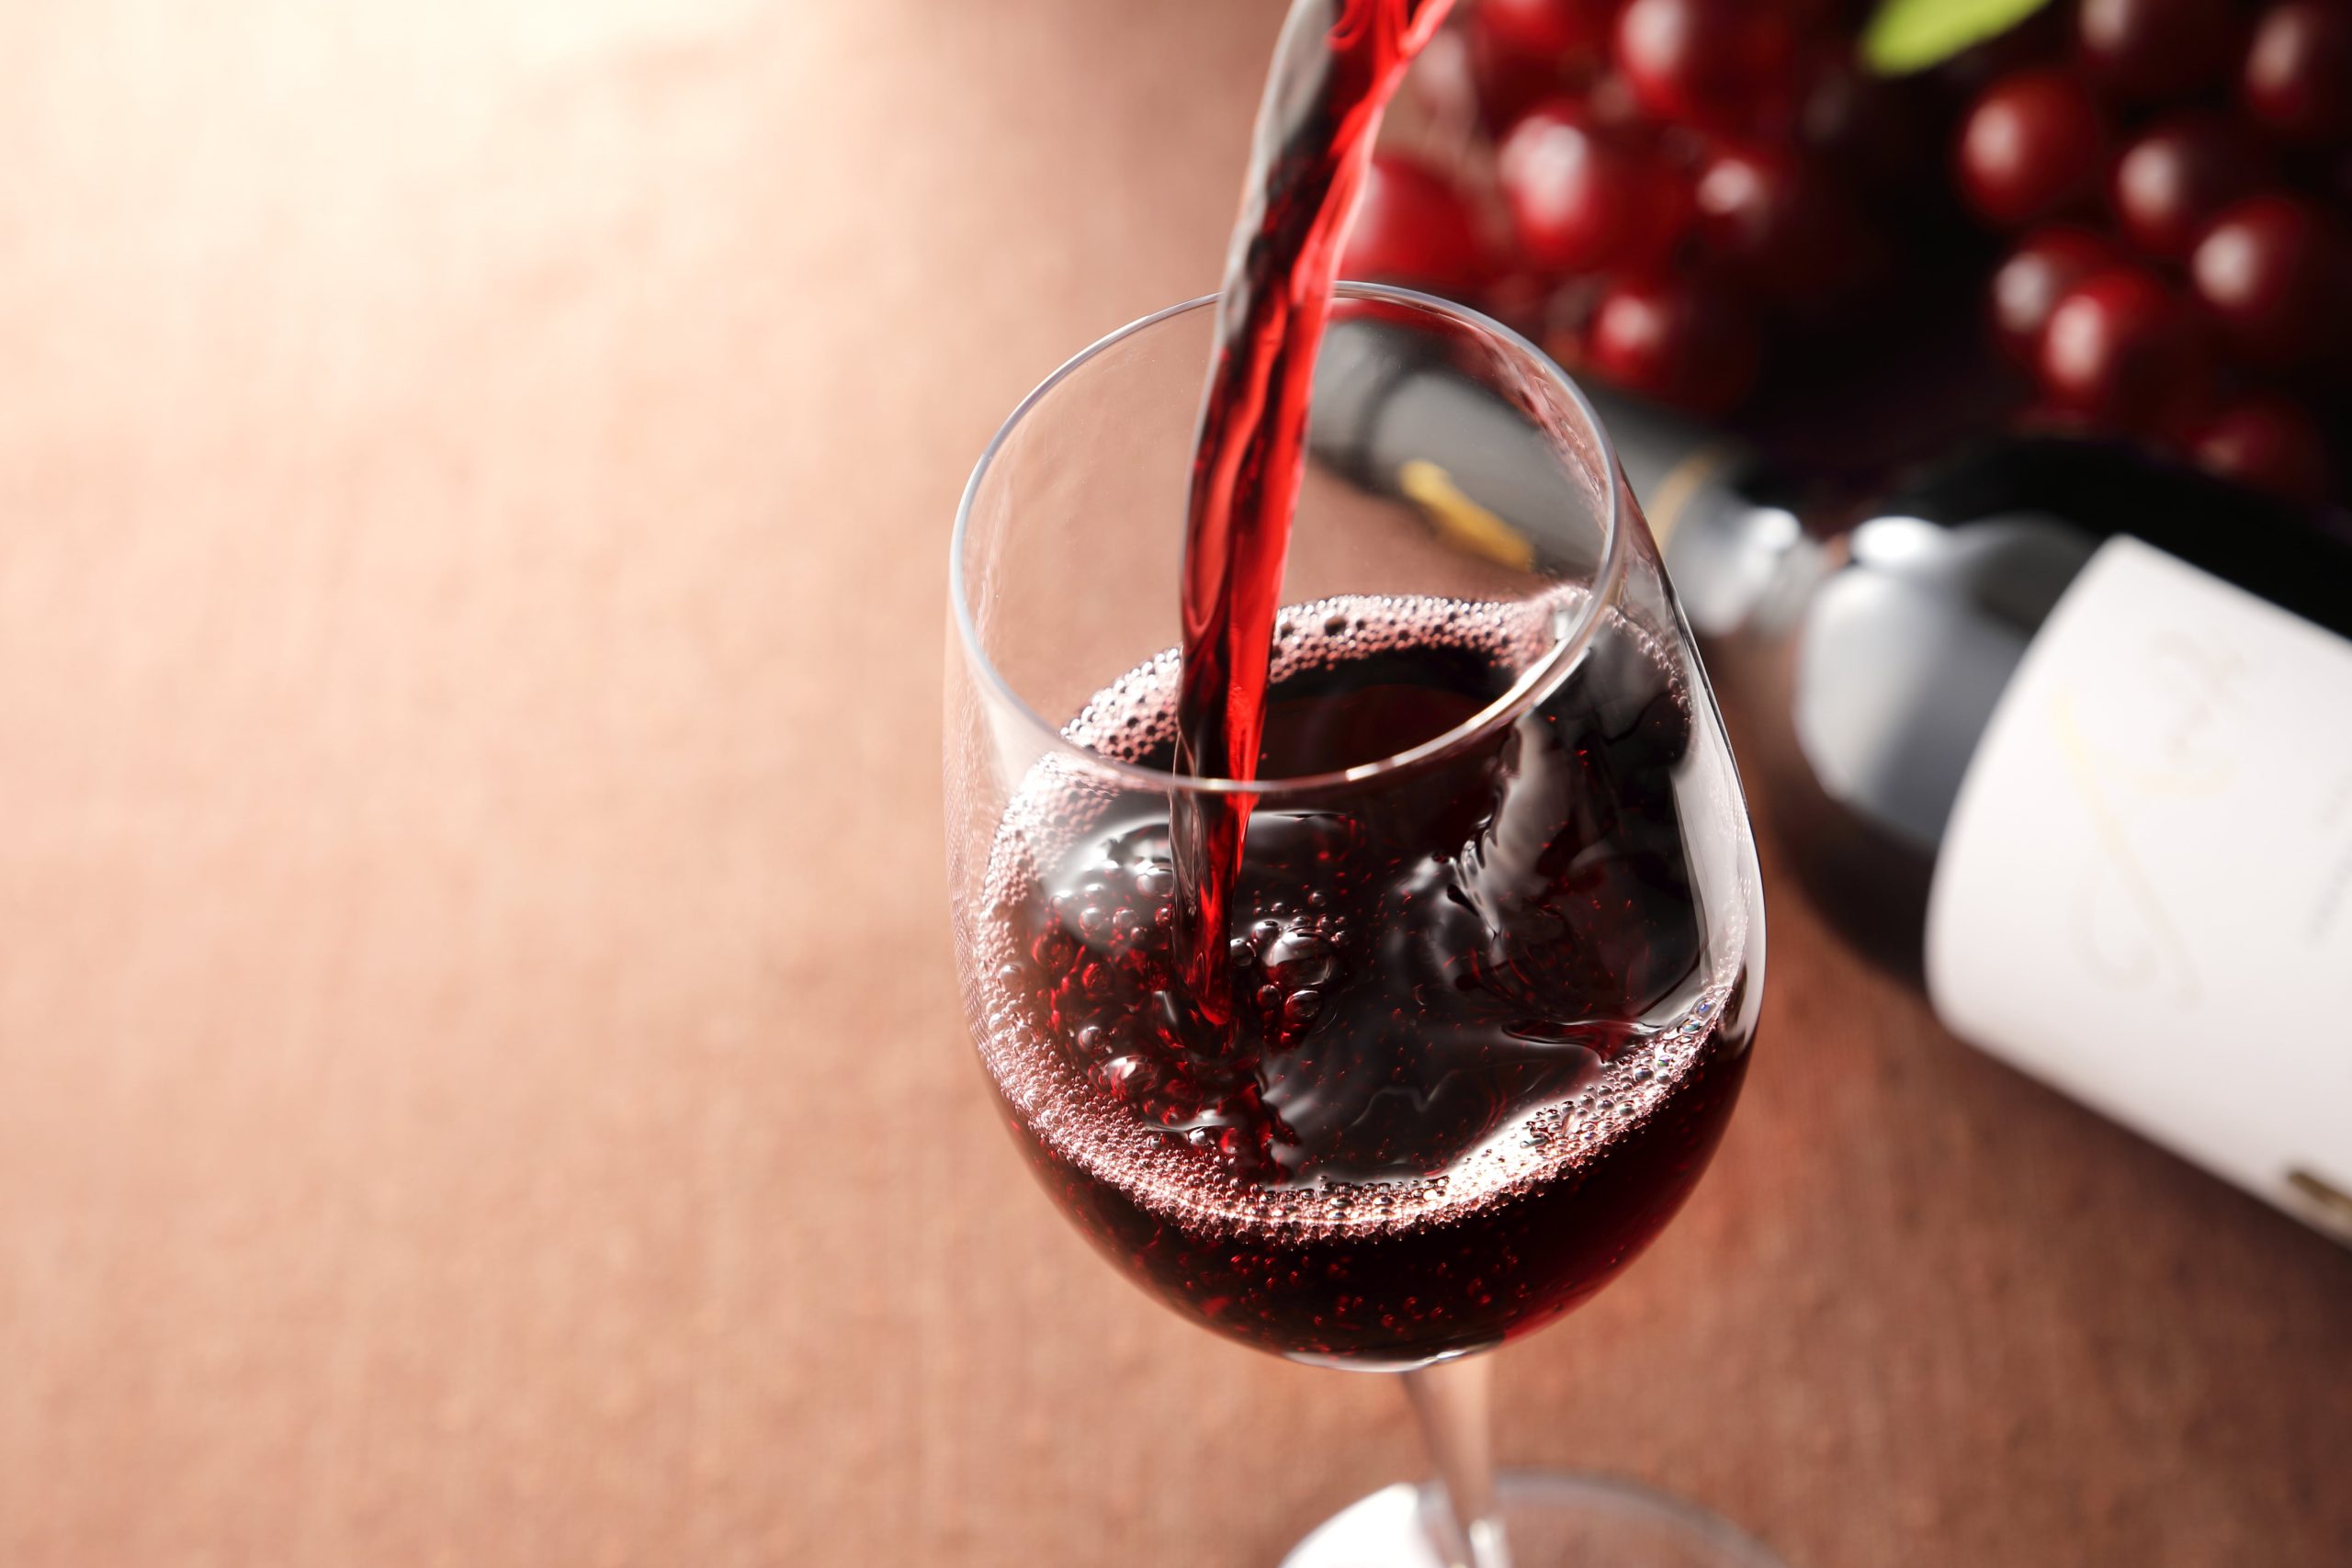 パルミジャーノ・レッジャーノとワイン - 風味の調和